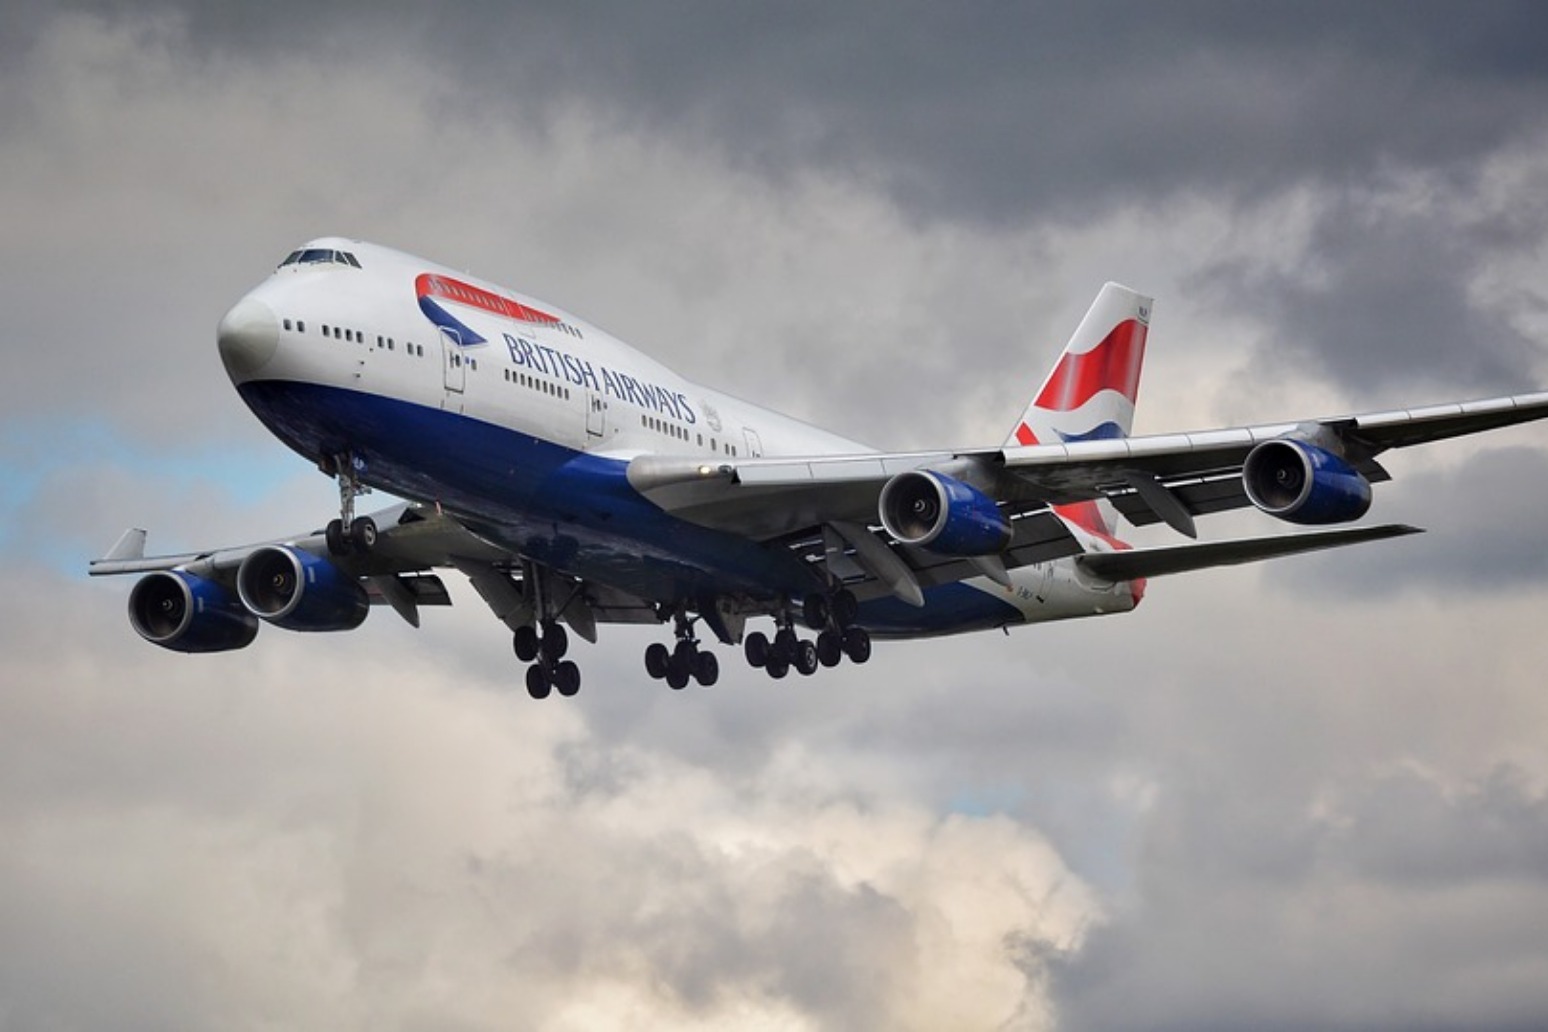 British Airways resuming services after latest IT meltdown 